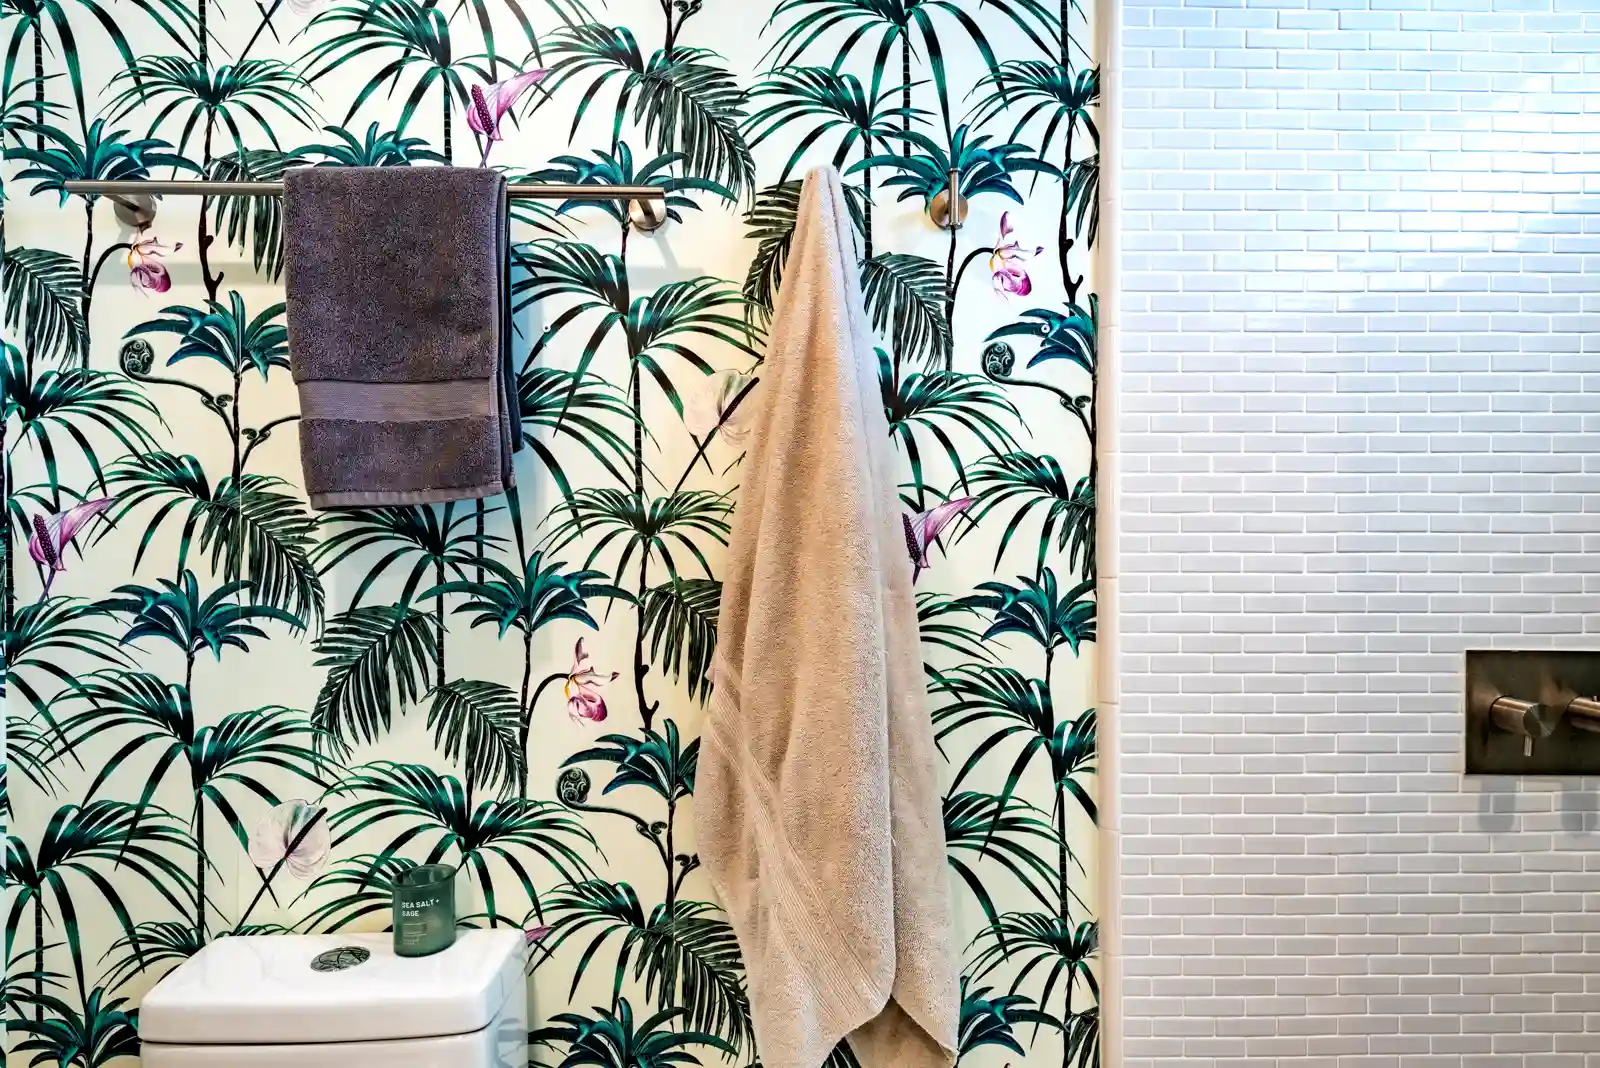 groen en wit palmbehang in de badkamer met mini-metro-douchetegel